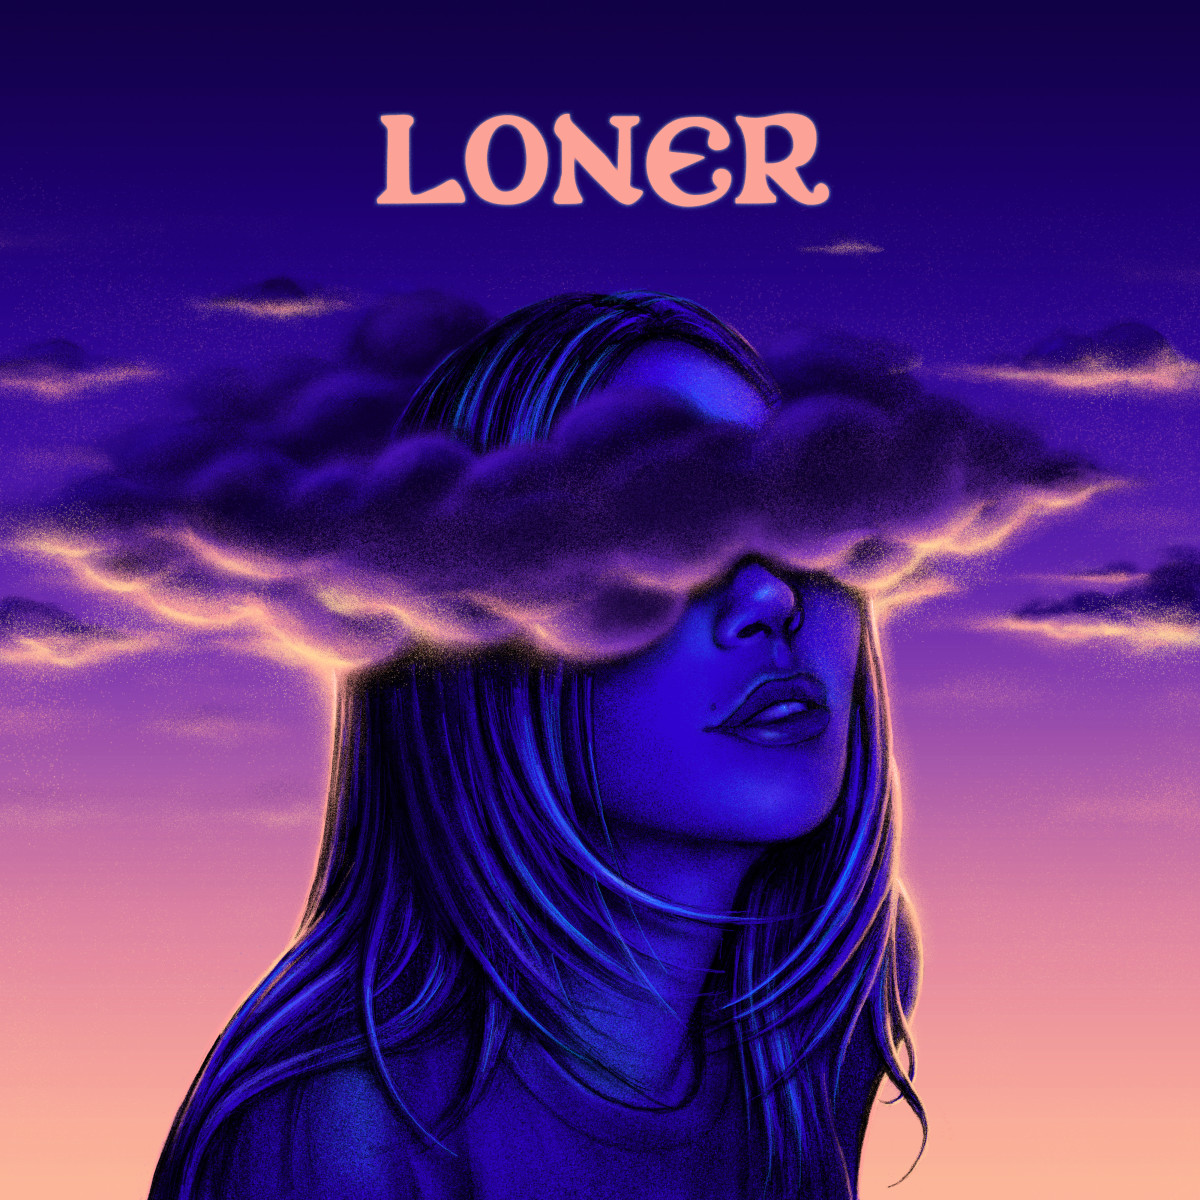 Cover of Alison Wonderland's third album, "Loner."